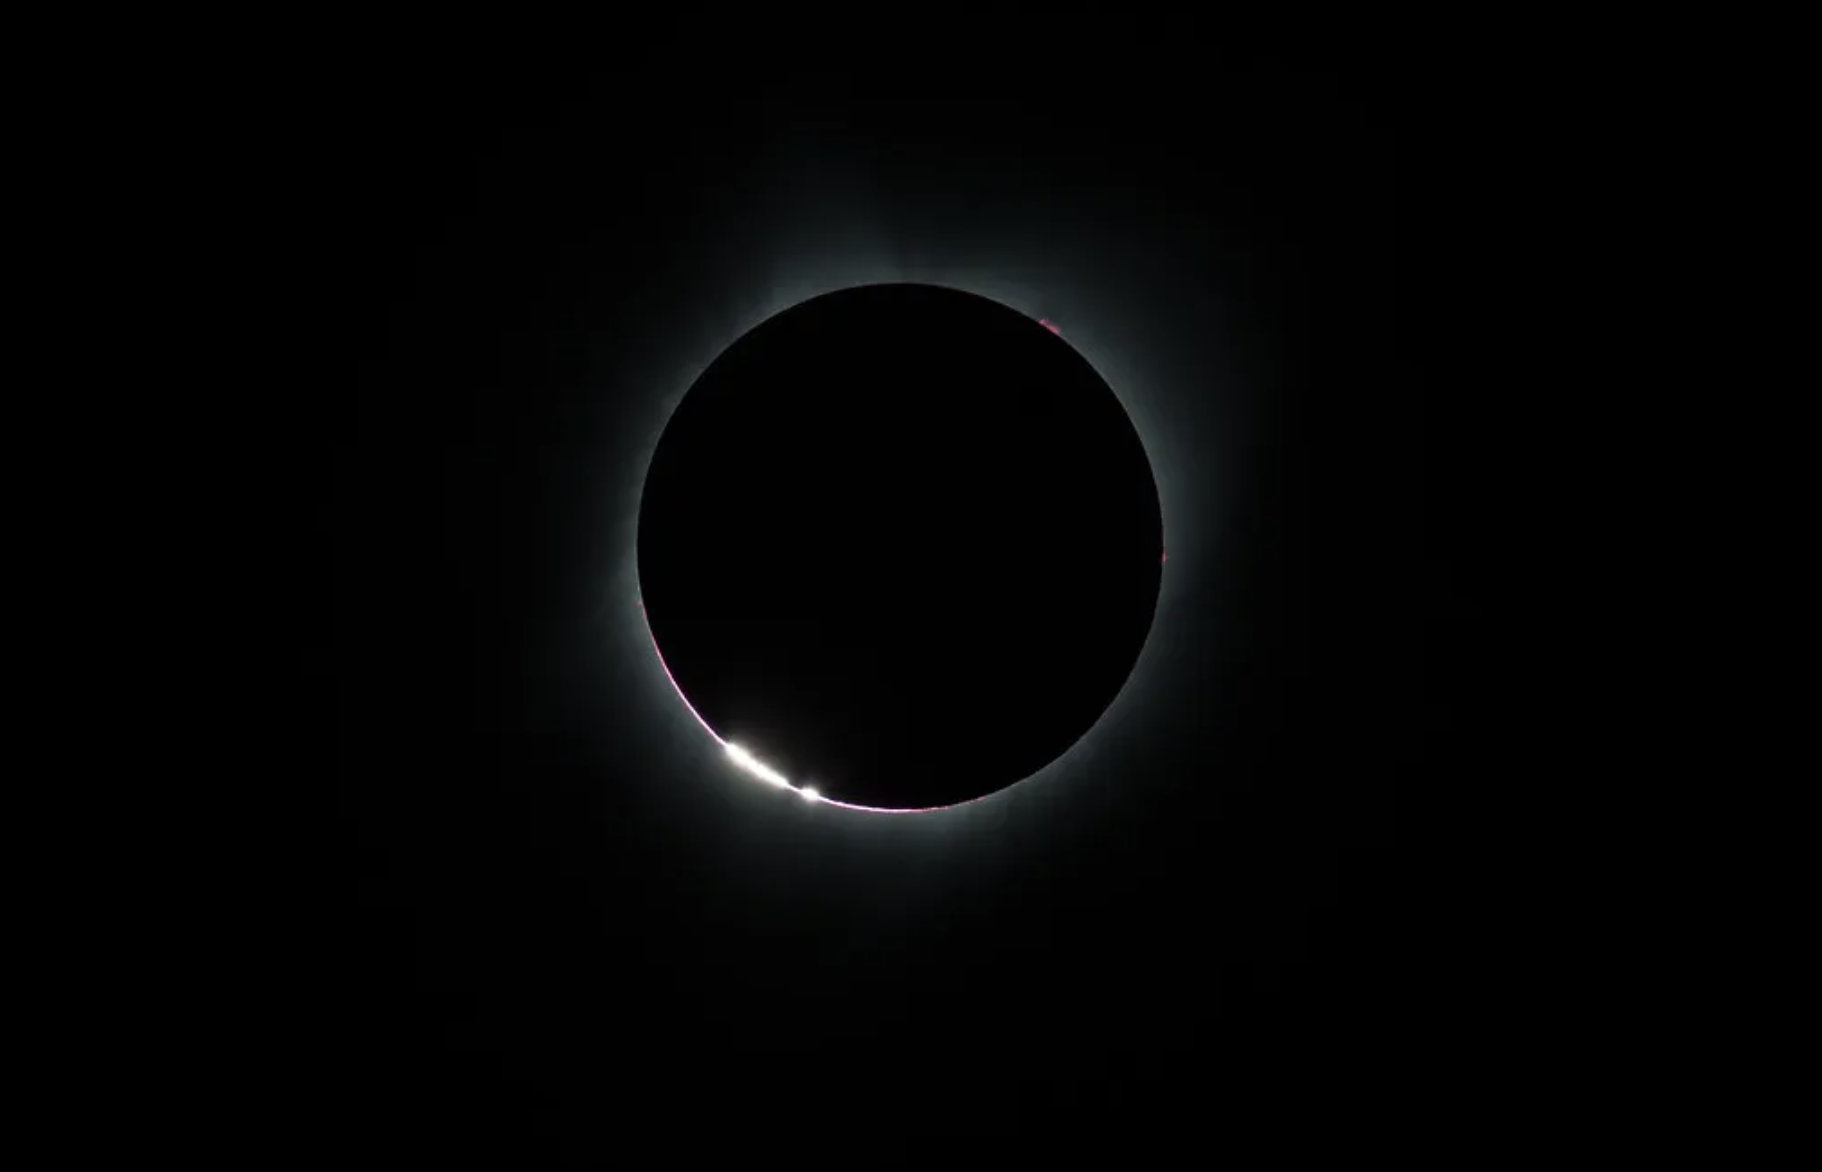 La imagen muestra un ejemplo de "perlas de Baily", las cuales aparecen a medida que la Luna hace su último tránsito delante del Sol durante un eclipse solar total. El Sol aparece en el centro de la imagen totalmente cubierto por la Luna, pero se ve un contorno brillante, más notable hacia la parte inferior izquierda del eclipse. El fondo es negro.